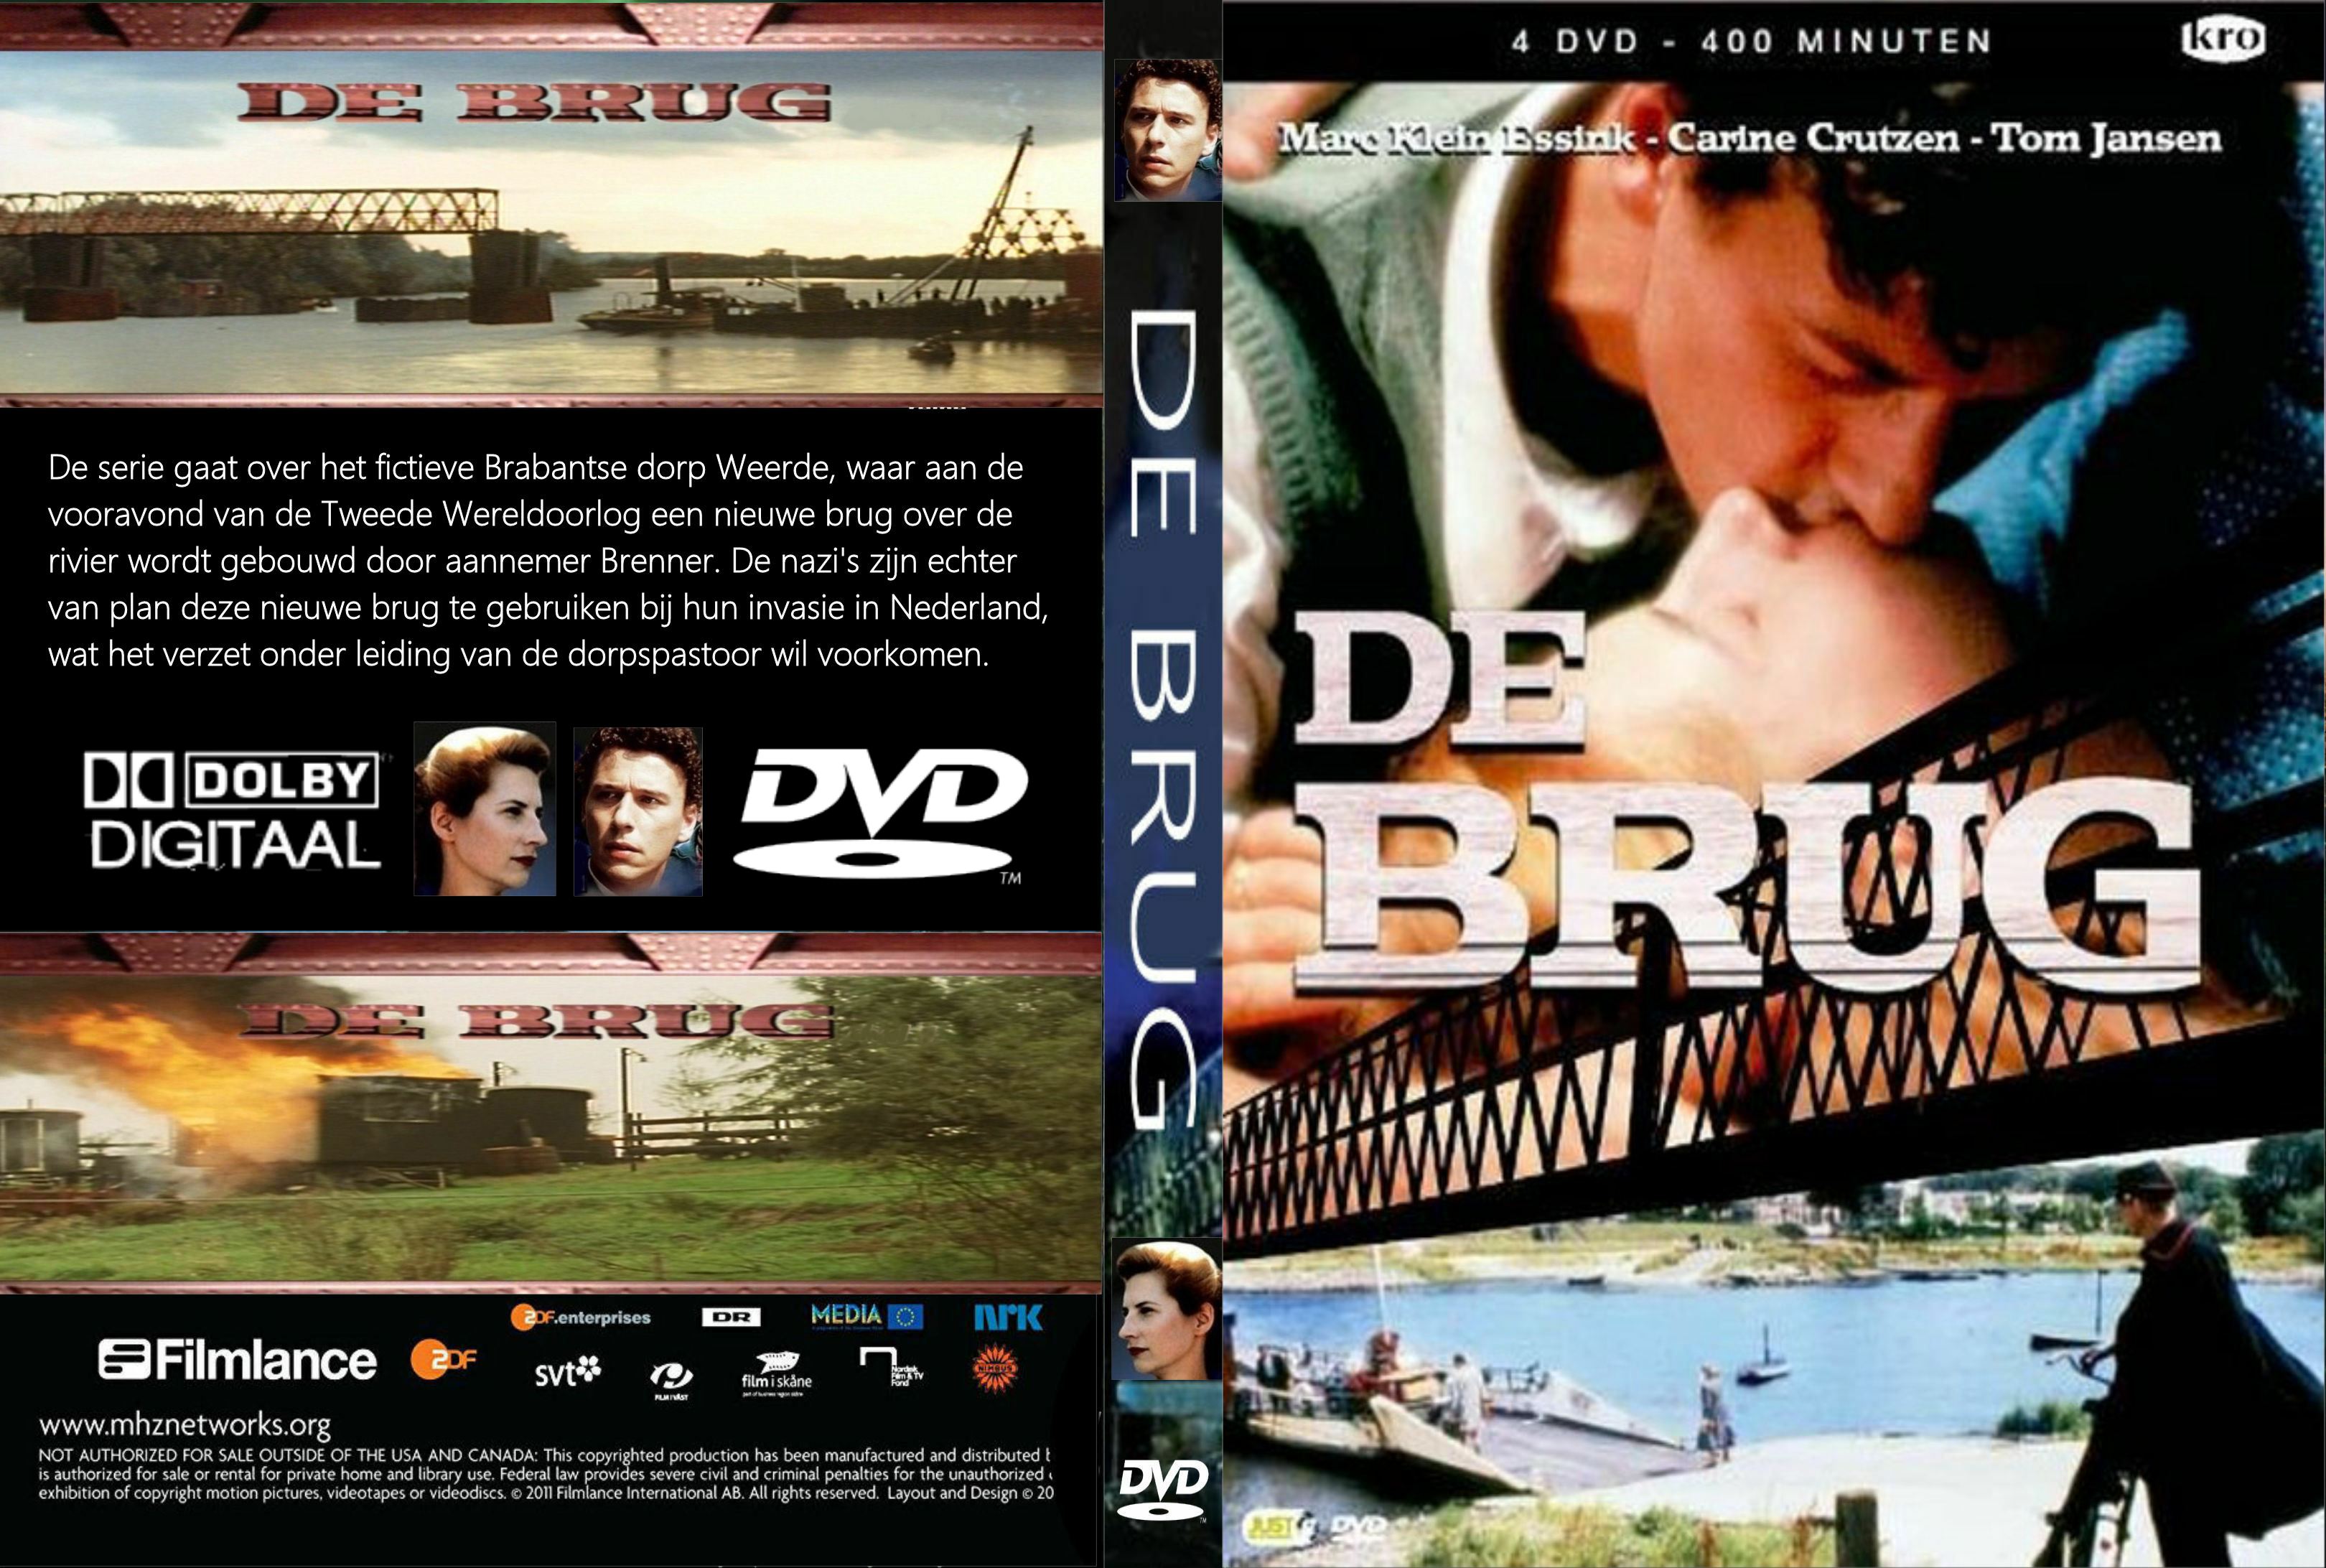 De Brug (1990) - DvD 1